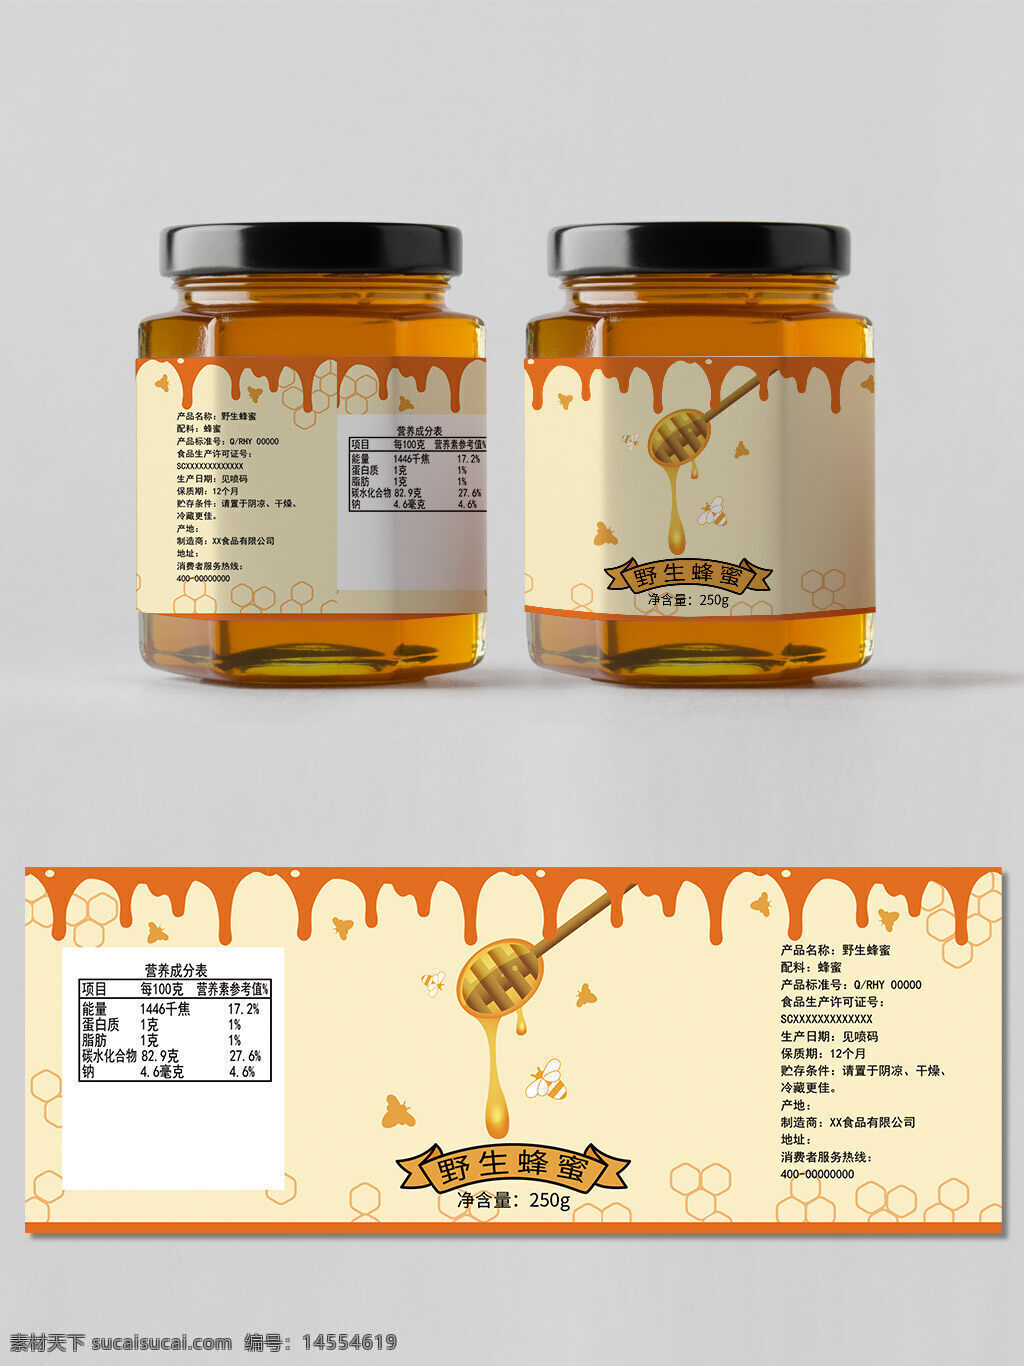 蜂蜜 食物 美食 食品包装 包装设计 包装模板 玻璃瓶包装 果酱包装 罐头包装